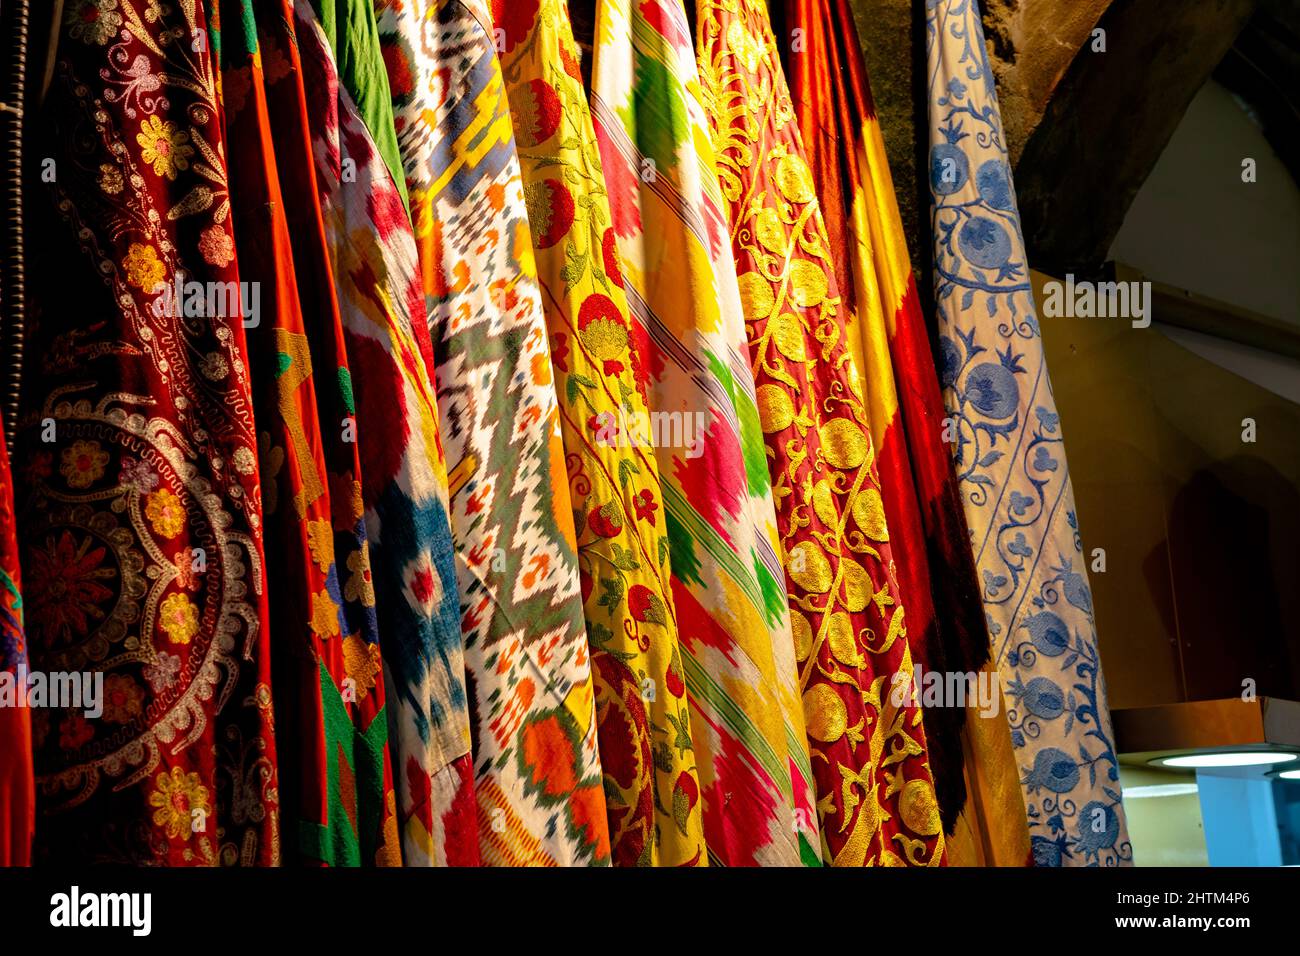 Foulards ou châles colorés dans une boutique du Grand Bazar à Istanbul. Boutiques du Grand Bazar. Bruit inclus. Banque D'Images